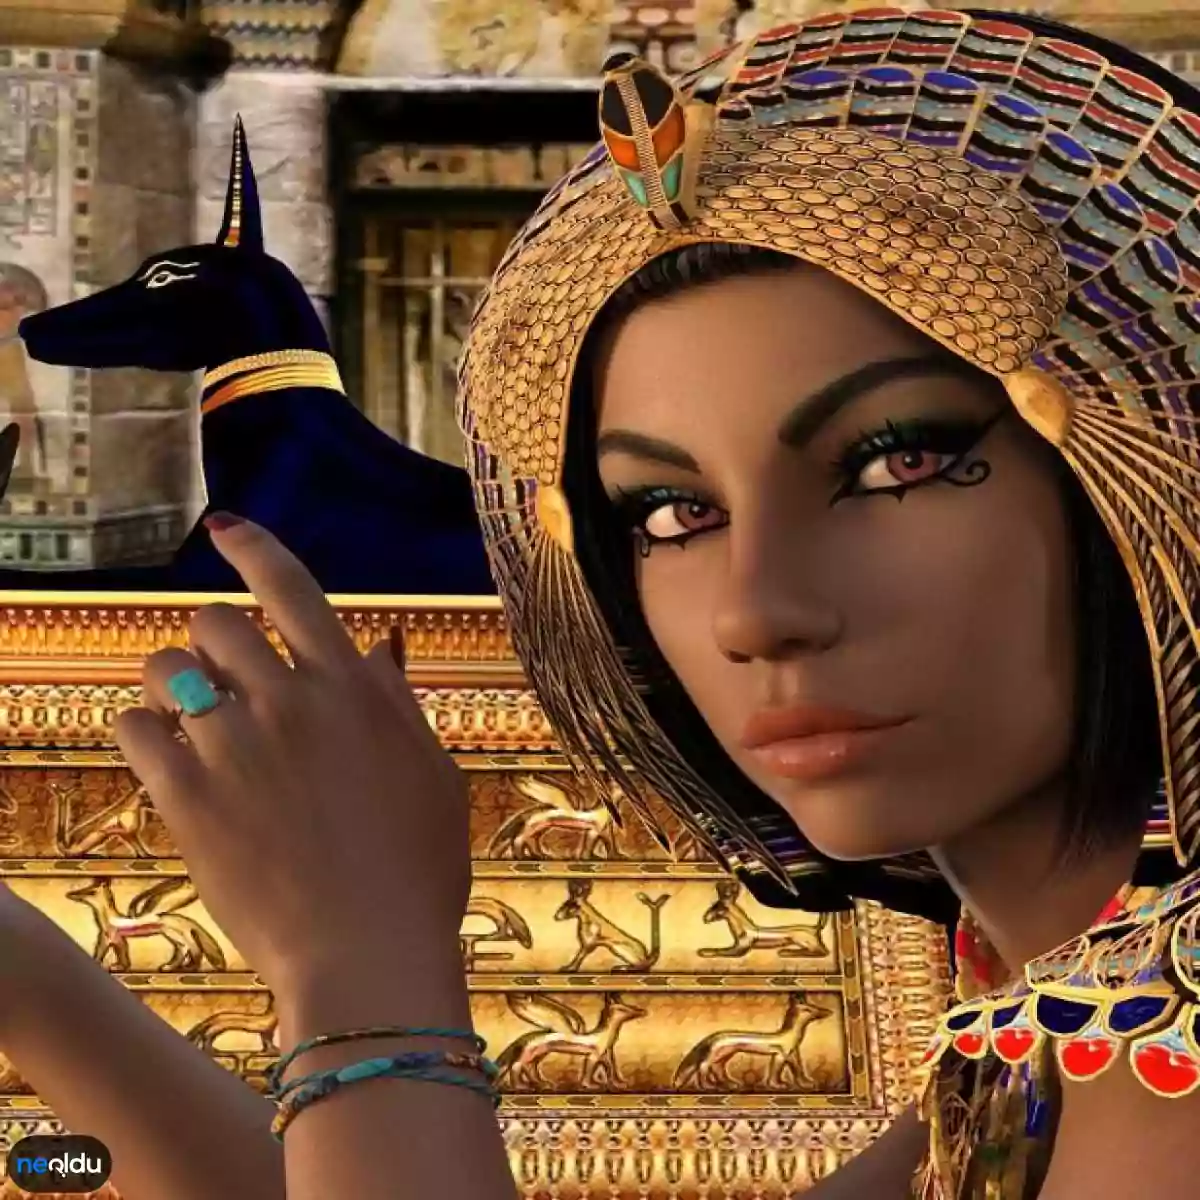 Antik Mısır Hakkında Bilgiler